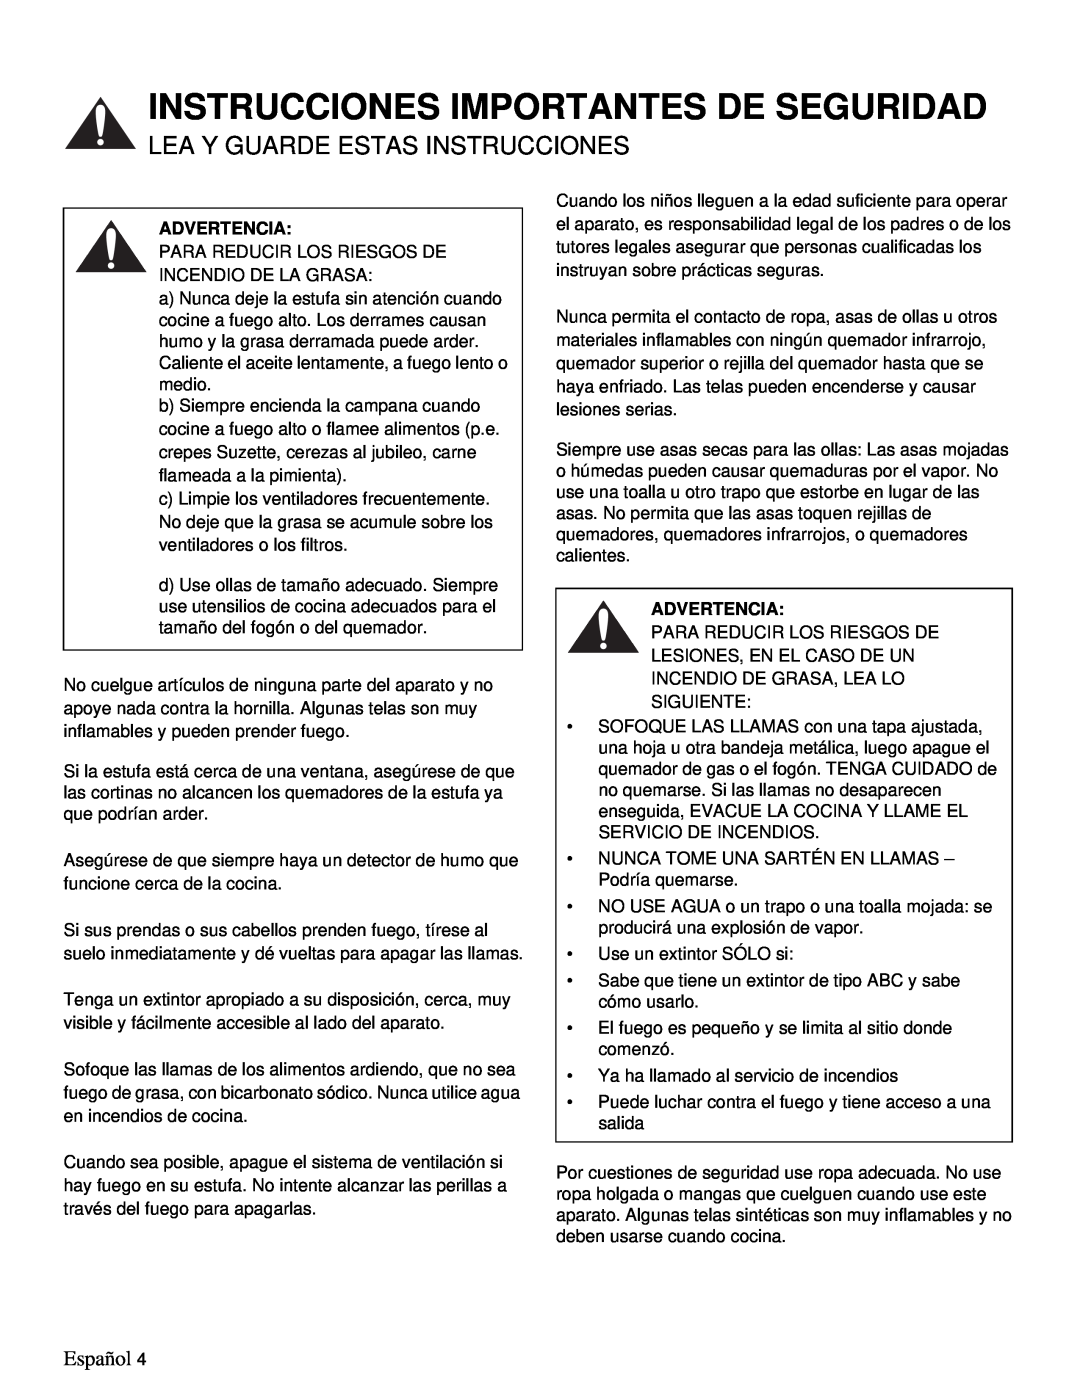 Thermador PRD48, PRD36 manual Instrucciones Importantes De Seguridad, Lea Y Guarde Estas Instrucciones, Español, Advertencia 